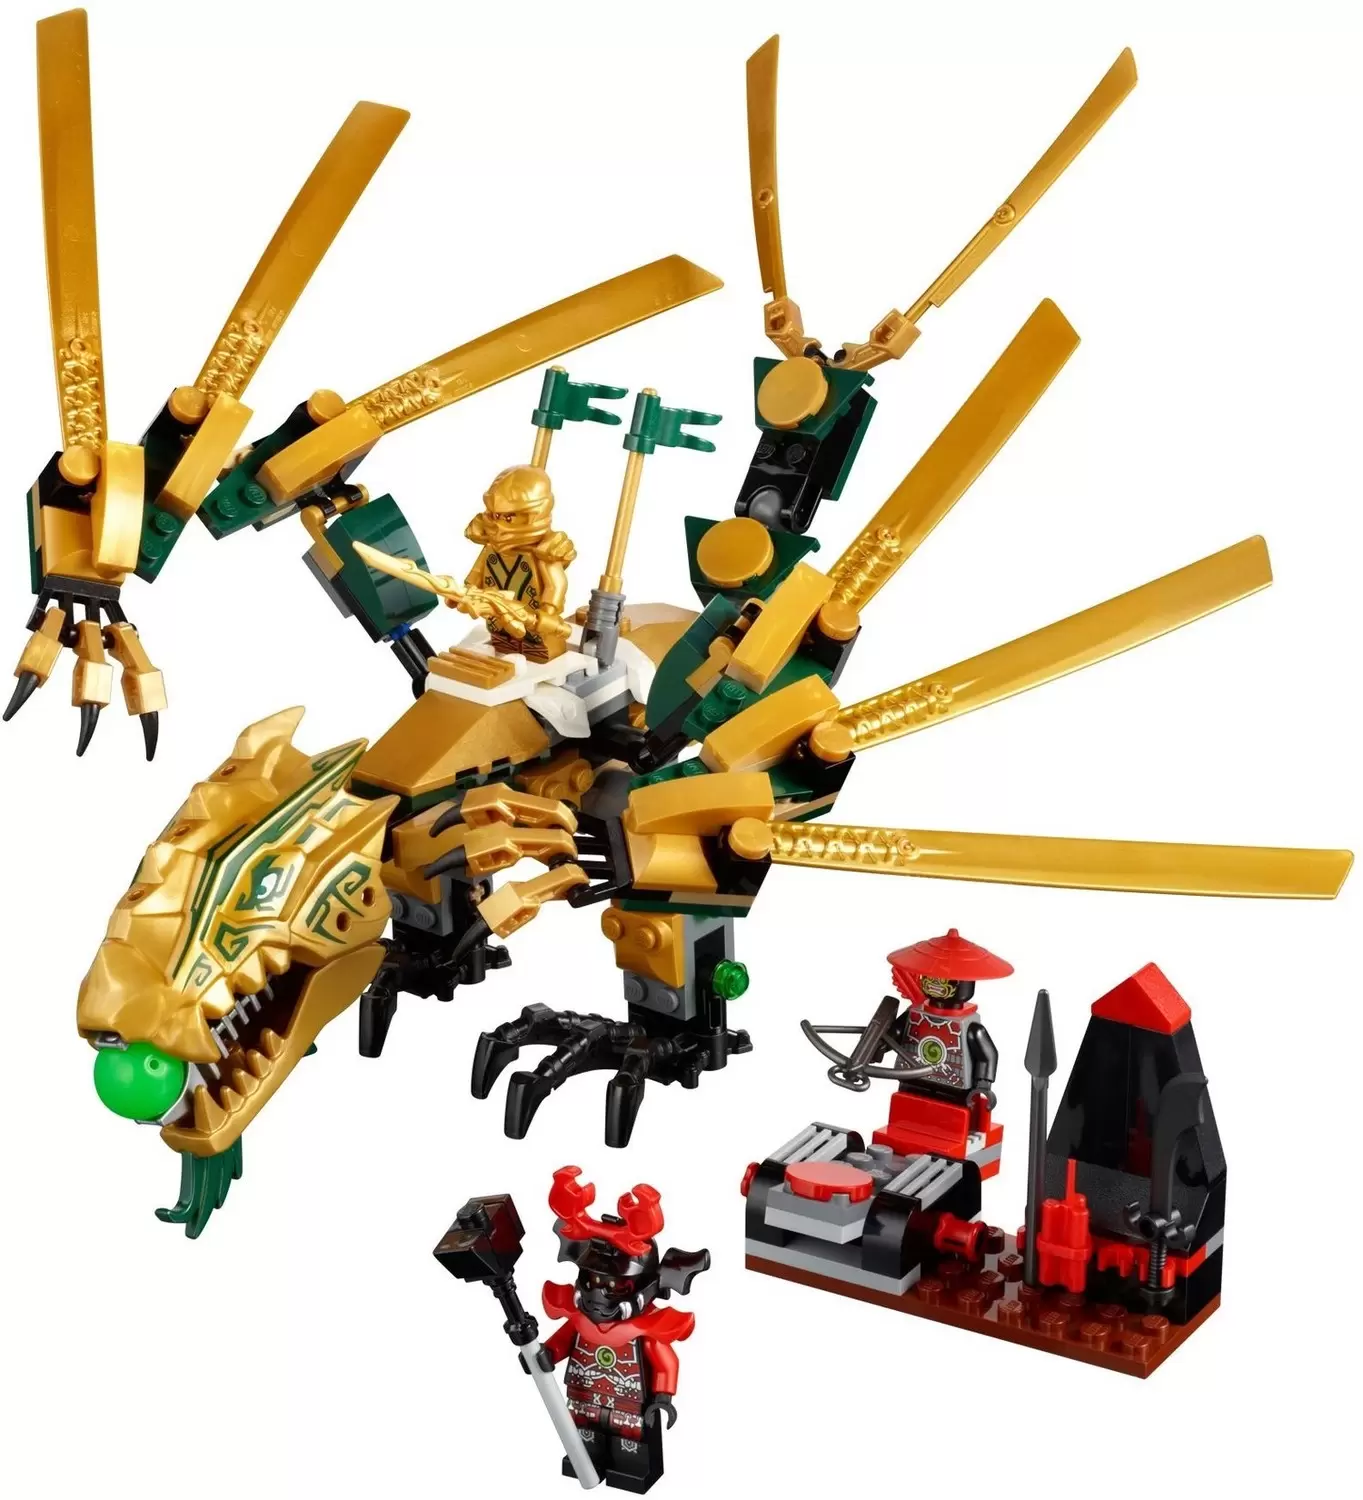 LEGO Ninjago - The Golden Dragon